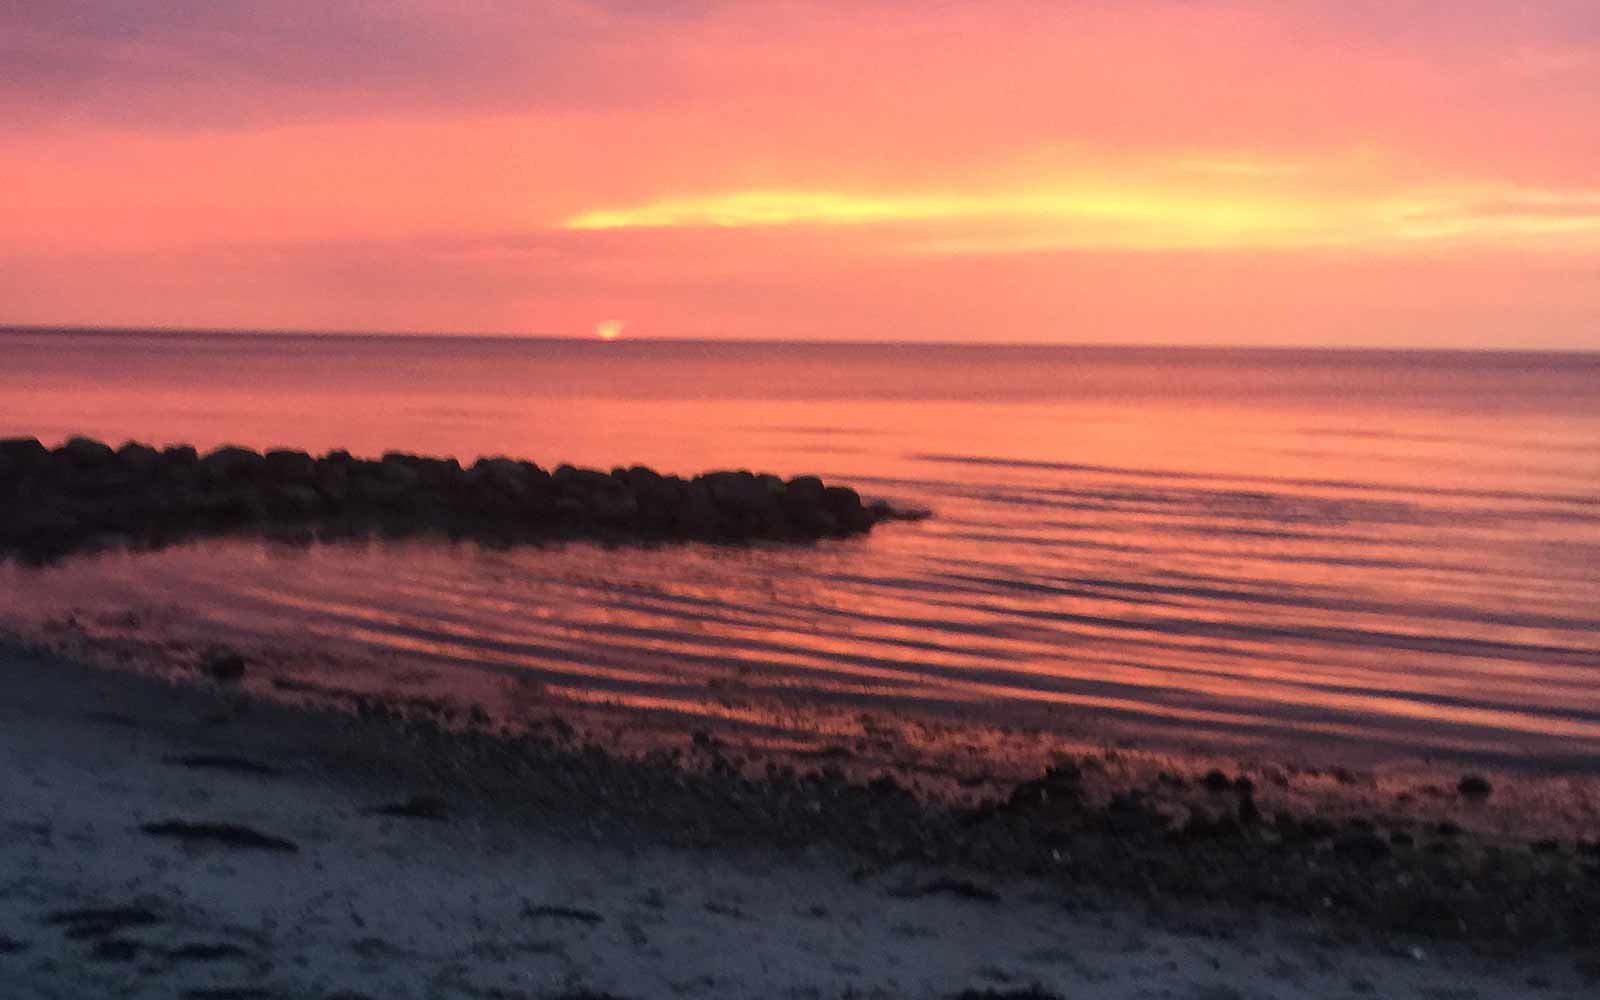 Coral, die Pantone-Farbe des Jahres 2019: Sonnenbestrahlte orange-rosa Wellen am Strand